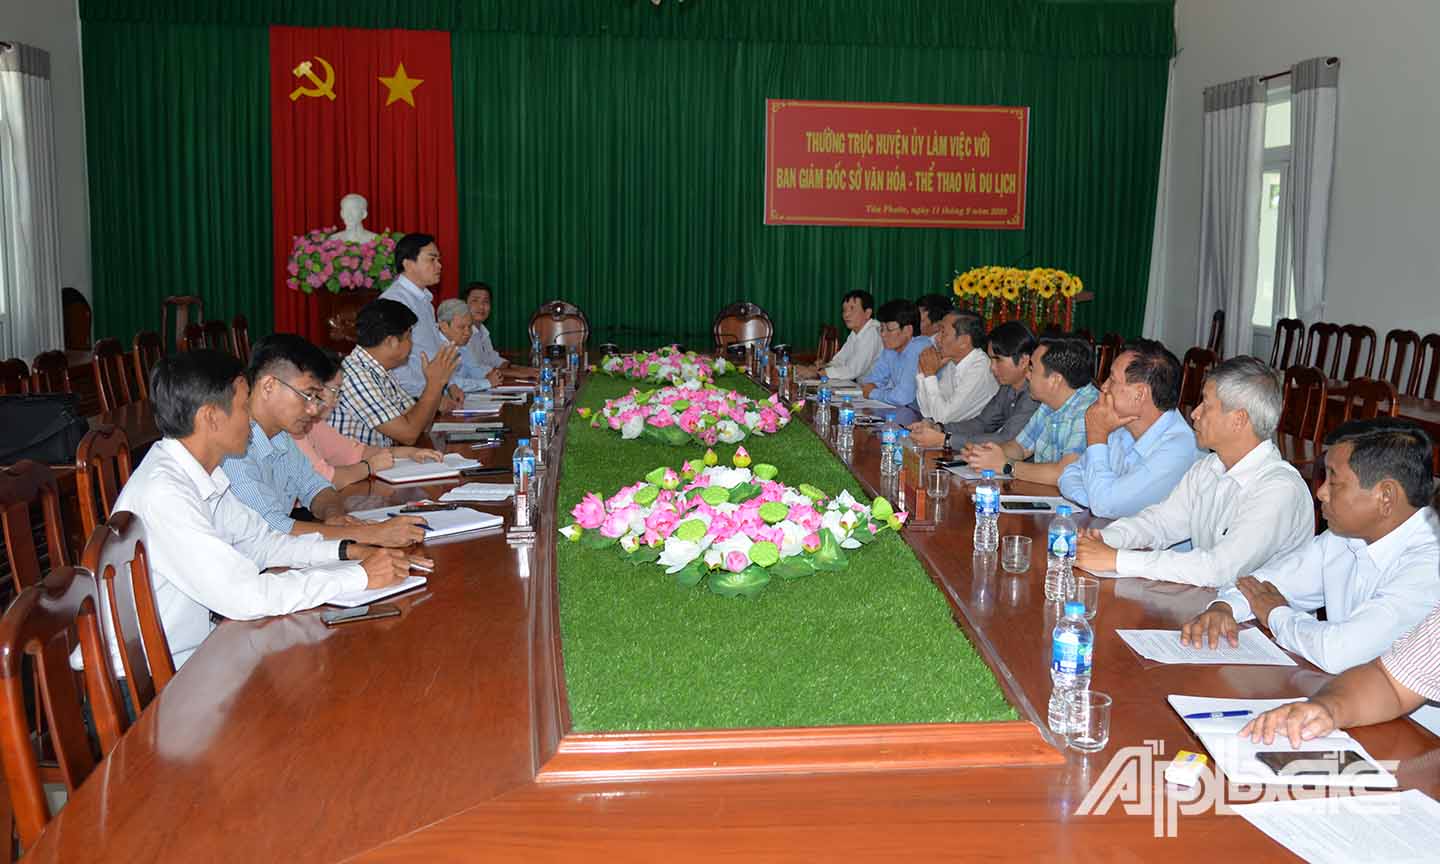 Qua khảo sát, các đại biểu đã đóng góp nhiều giải pháp giúp du lịch ở huyện Tân Phước phát triển.